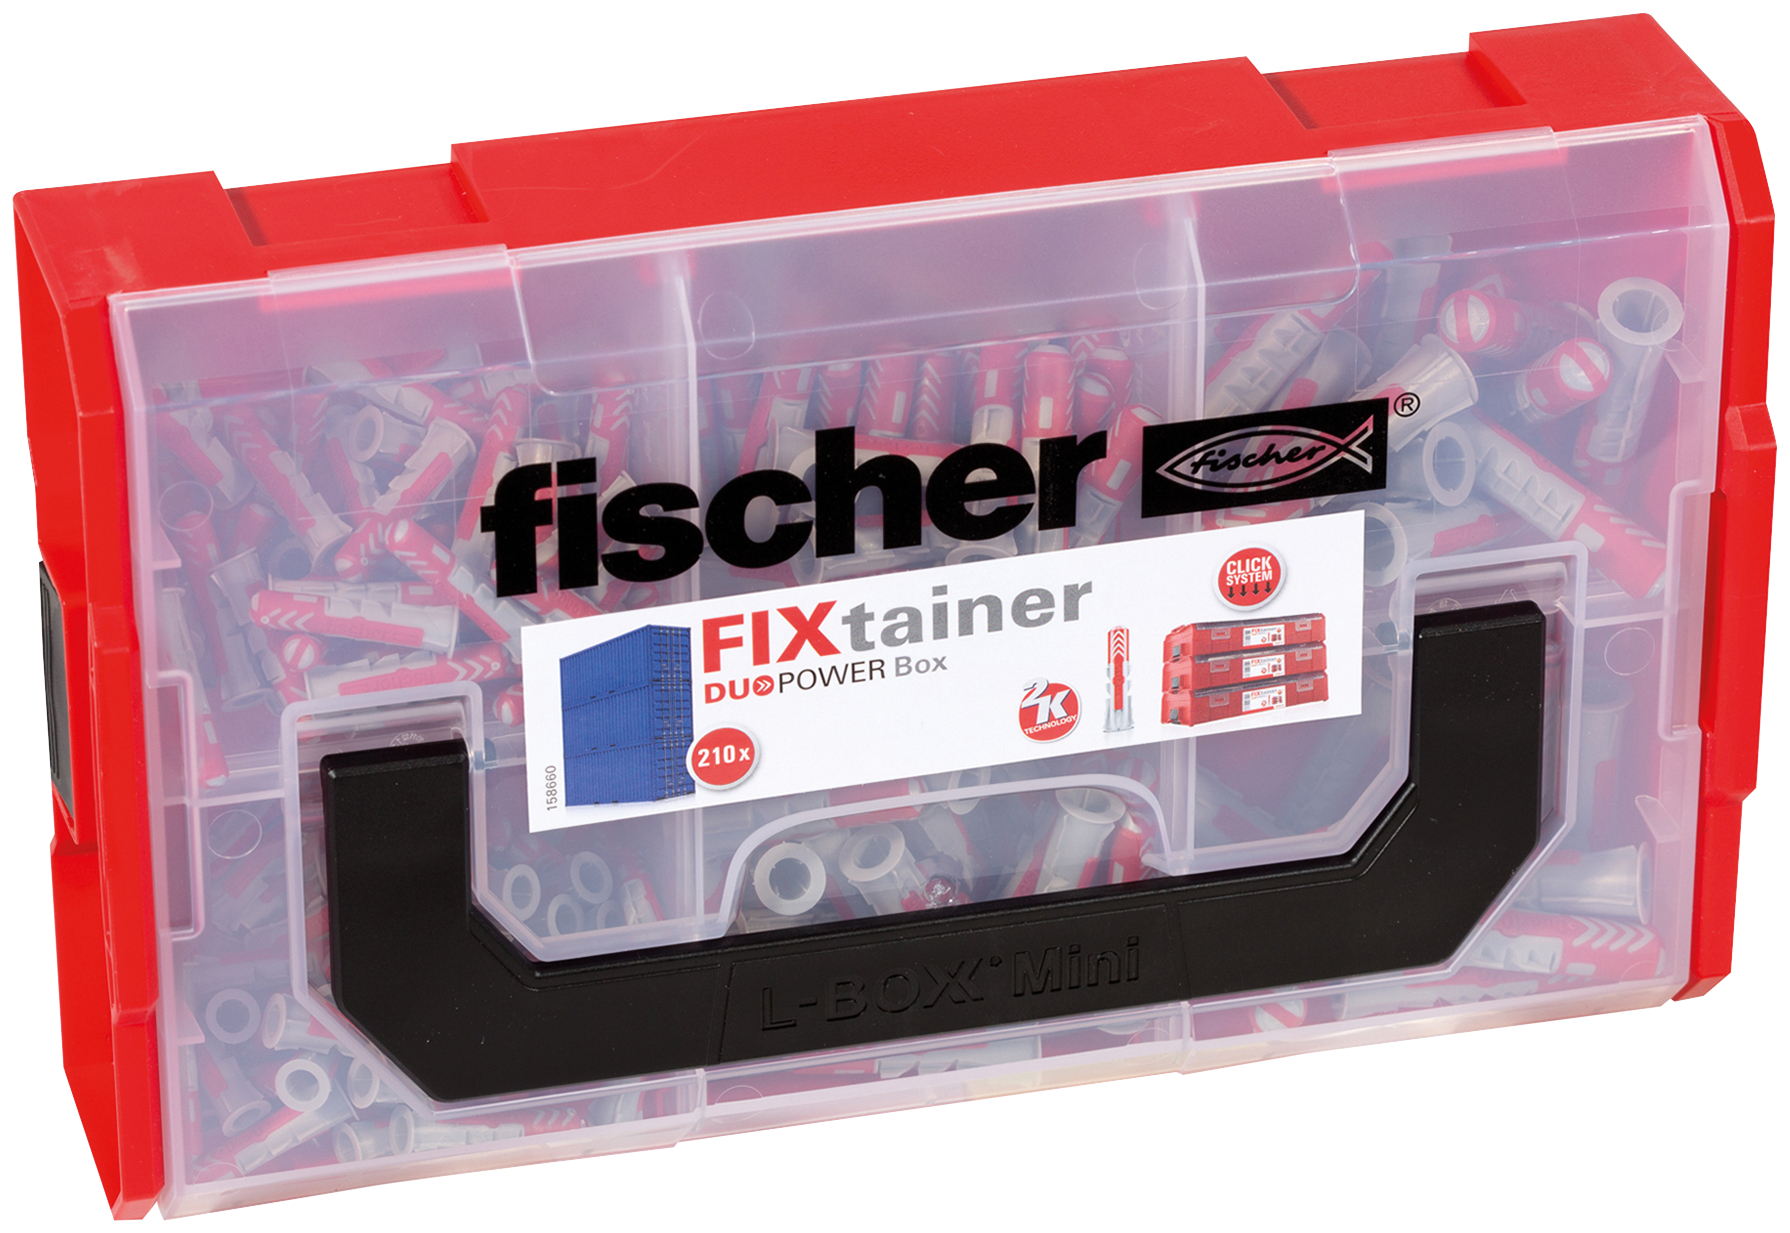 fischer FIXtainer DUOPOWER Valigetta tasselli (210 Pz.) Pratiche soluzioni di fissaggio per le pi comuni applicazioni nel fischer FixTainer impilabile e di alta qualit.